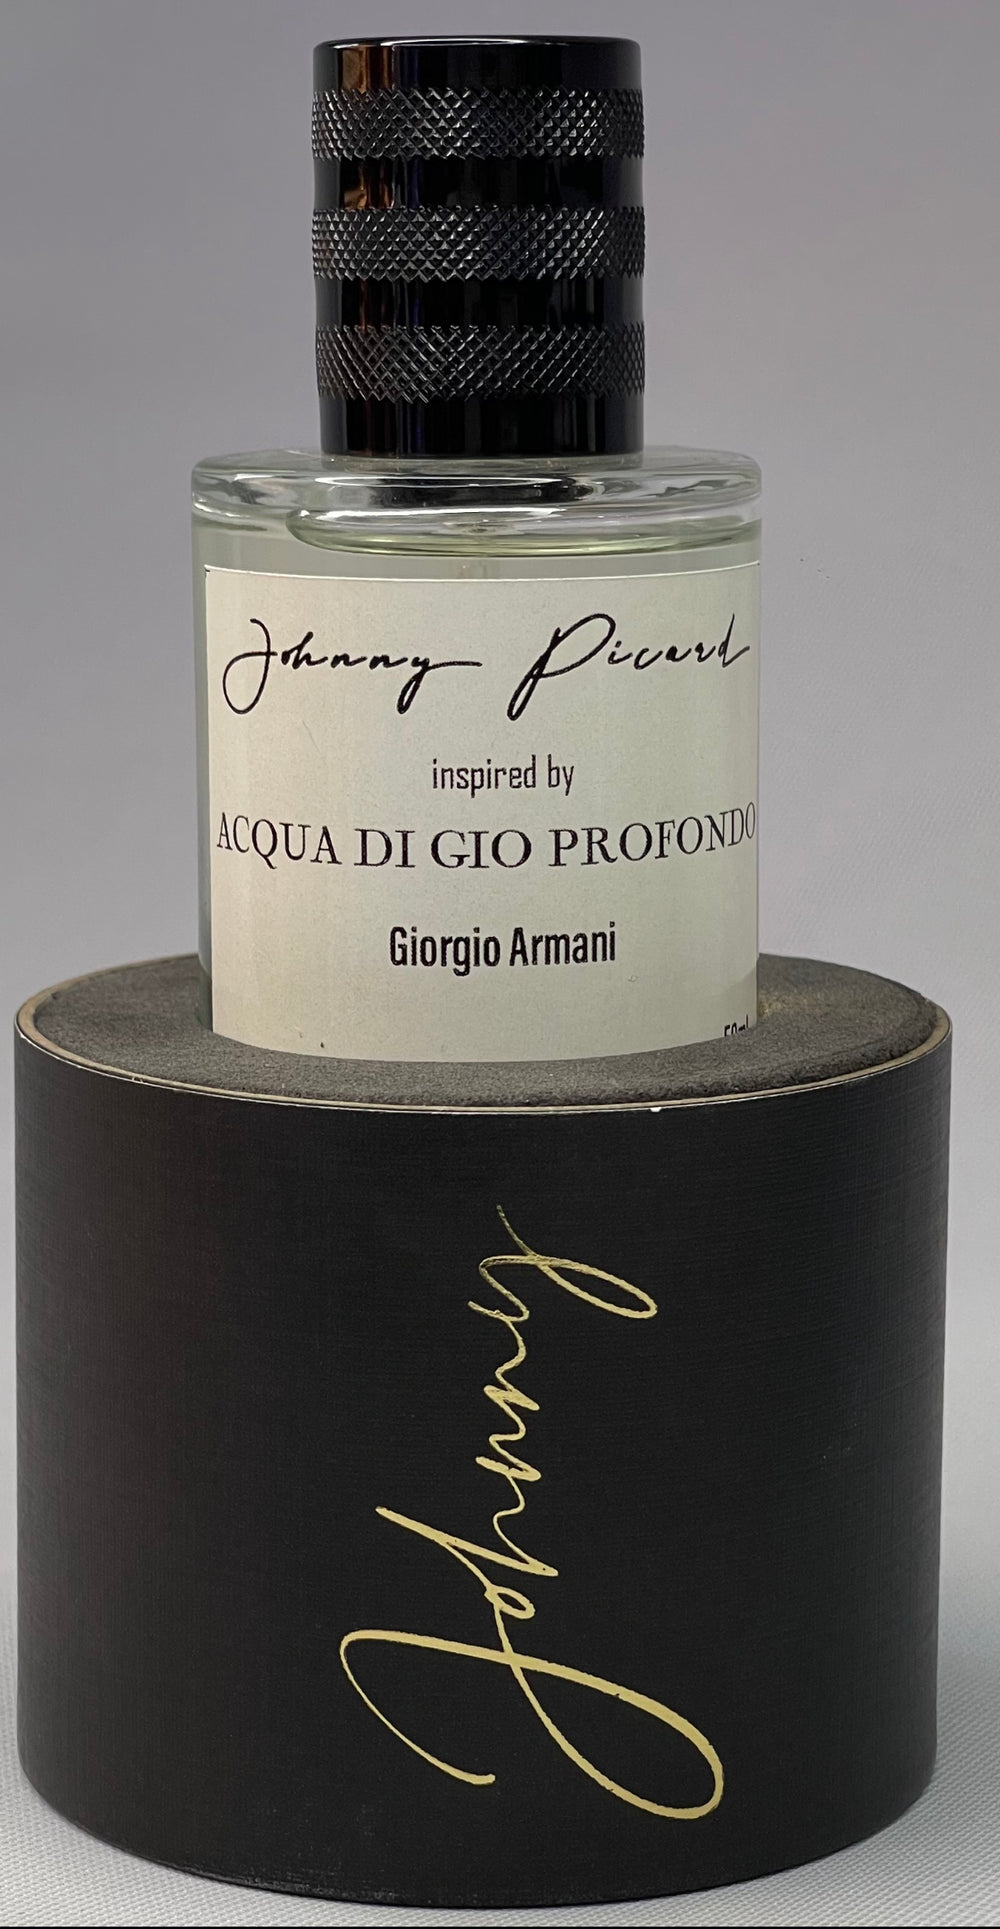 Johnny Picard Inspired By Acqua Di Gio Profondo GIORGIO ARMANI